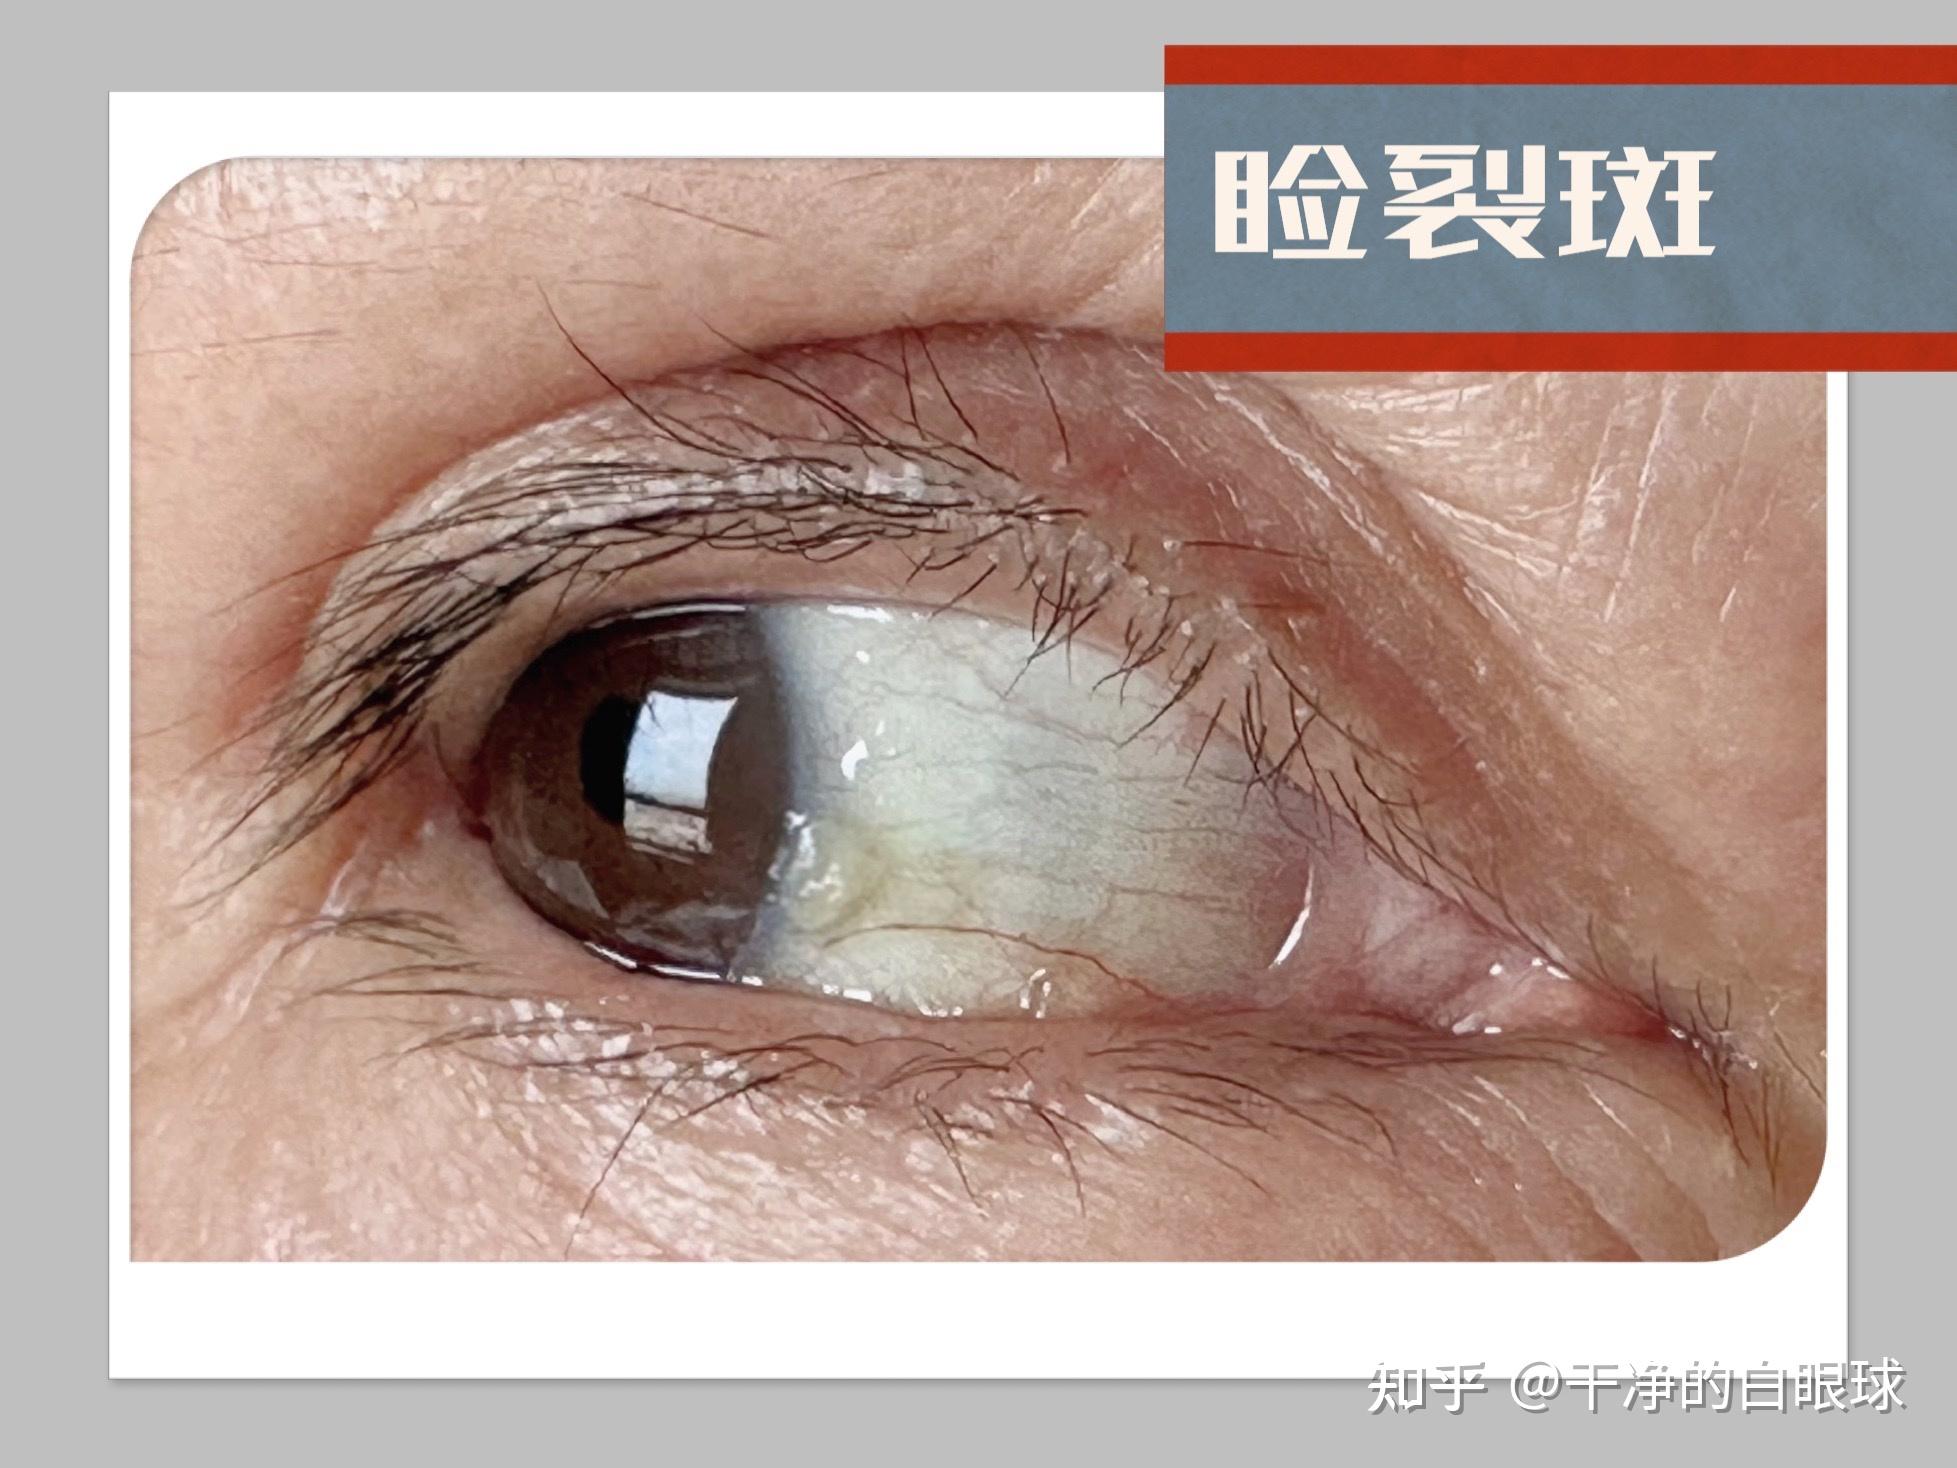 横浜相鉄ビル眼科医院で瞼裂斑（けんれつはん）の手術を受けた患者さんの写真